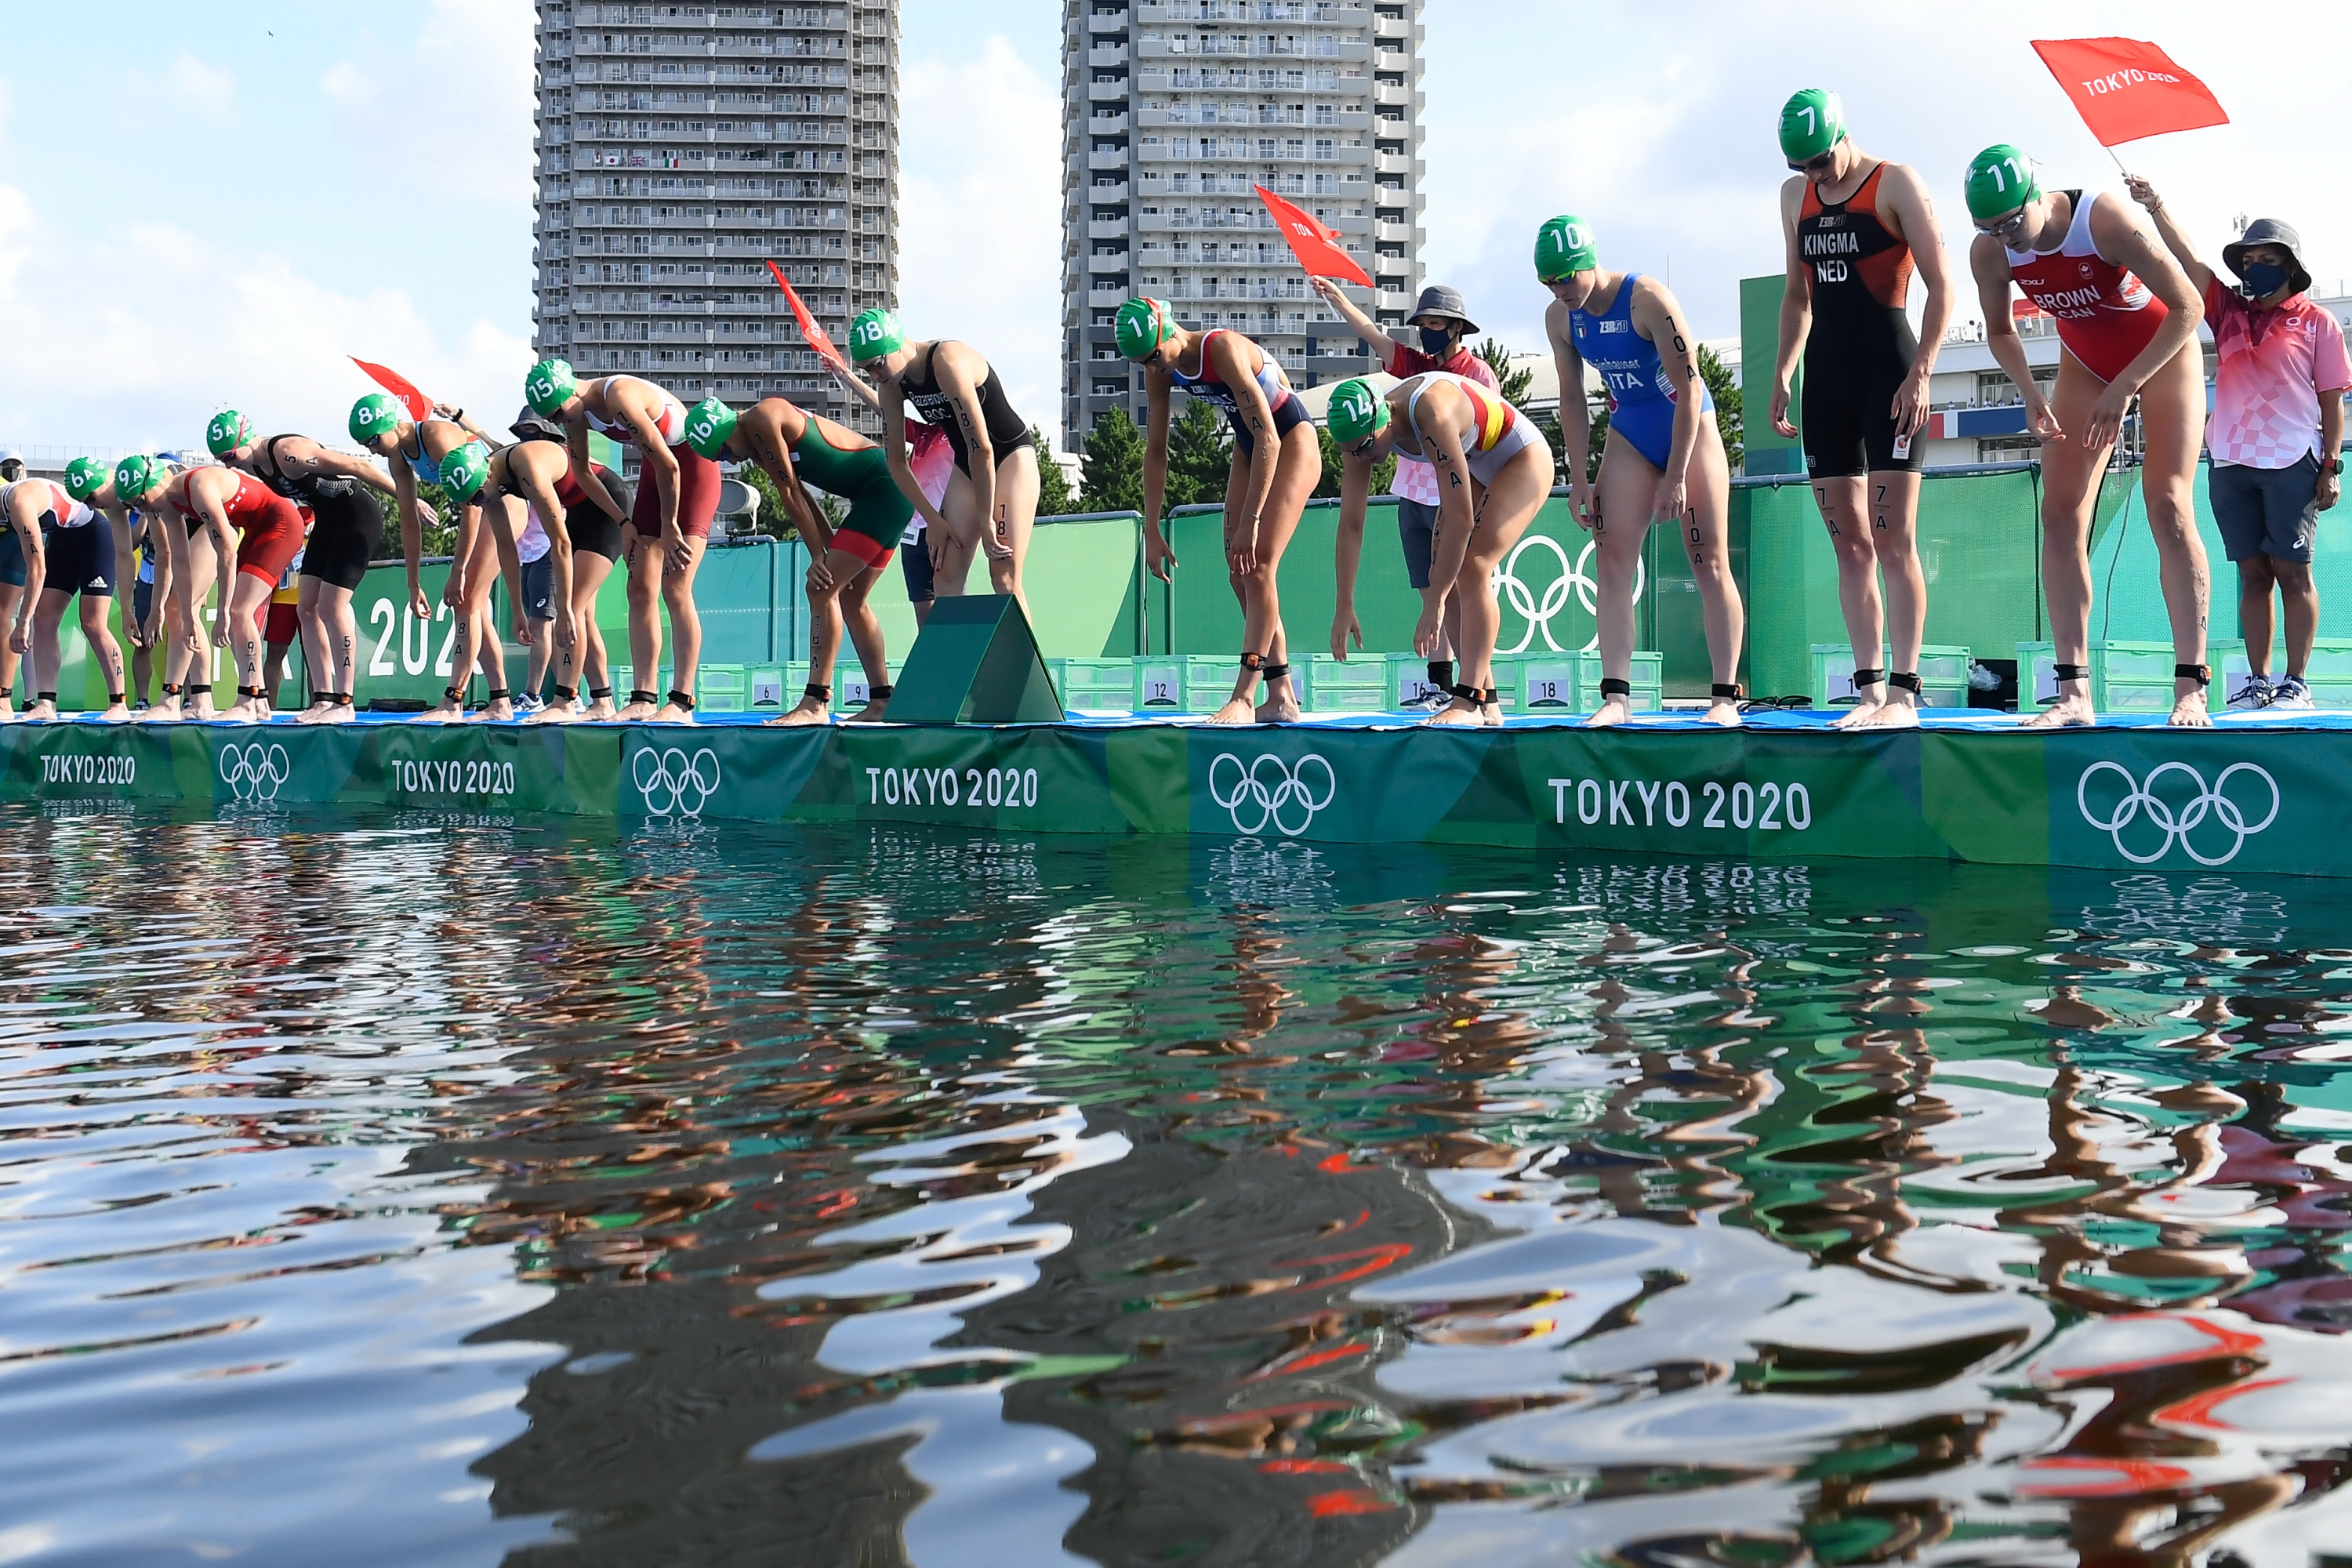 Leonie Periault (FRA) participe au relais mixte féminin Triathlon lors des Jeux Olympiques Tokyo 2020, au Parc marin d'Odaiba, le 31 juillet 2021, à Tokyo, Japon, photo Philippe Montigny / KMSP (photo de MONTIGNY Philippe / KMSP / KMSP via AFP)